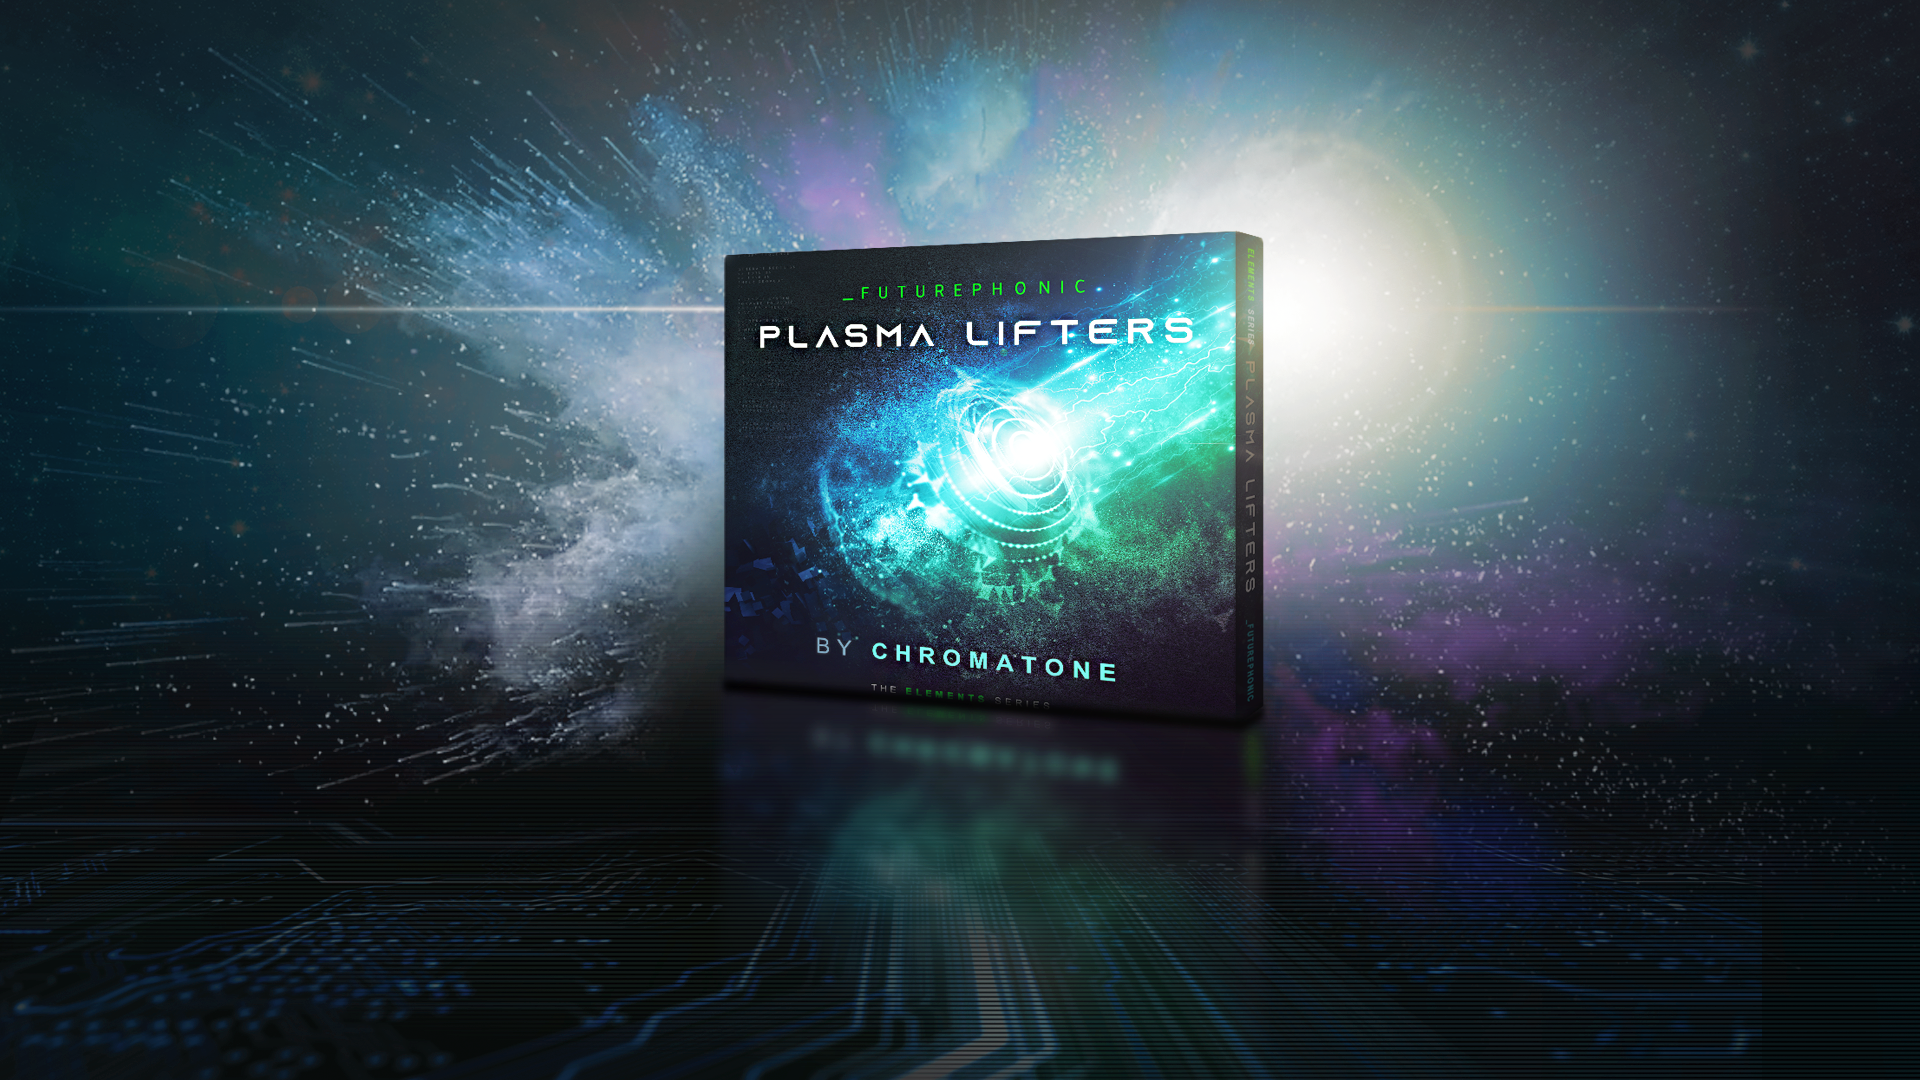 Plasma Lifters by Chromatone - Futurephonic